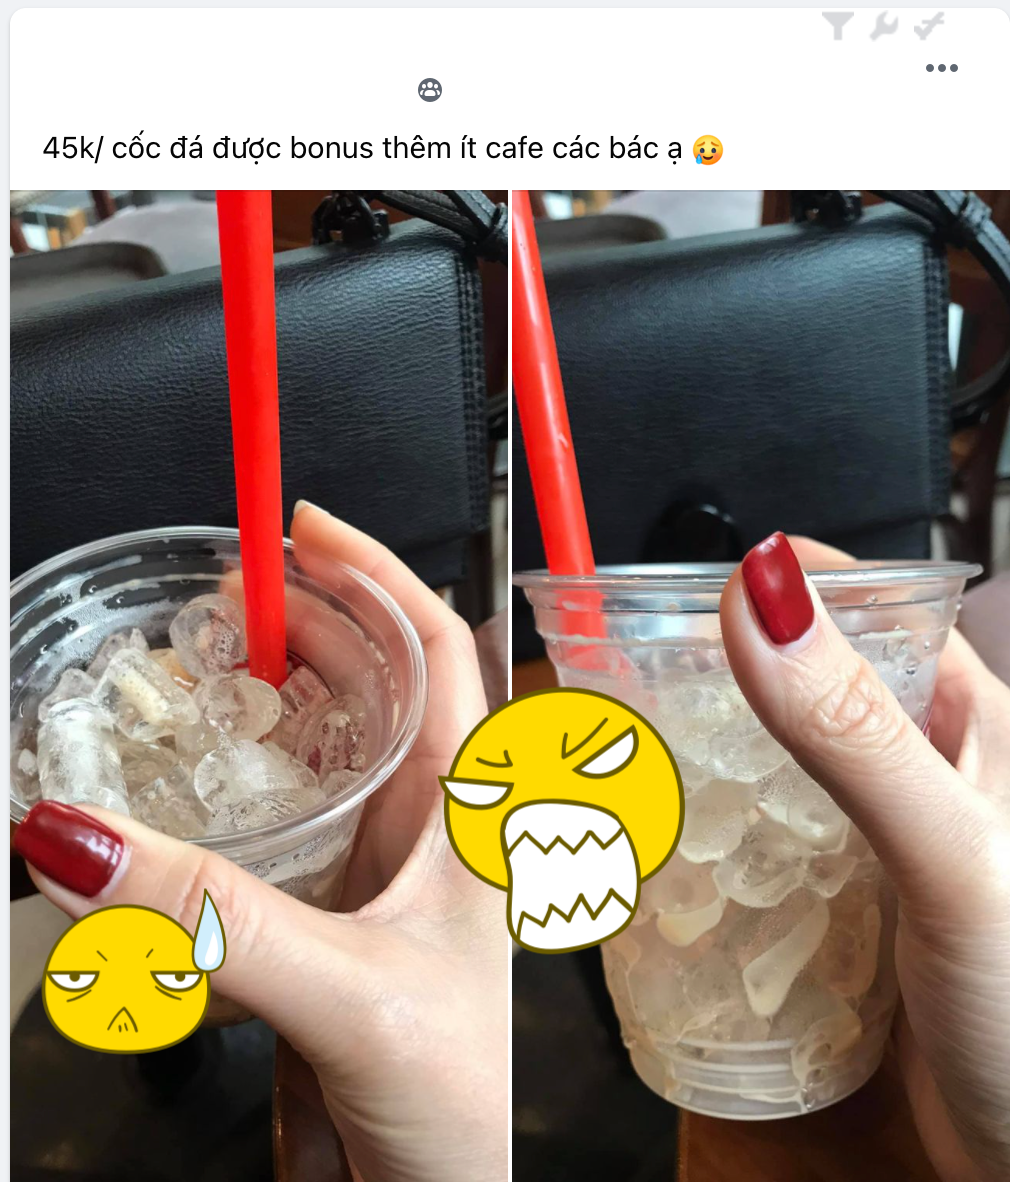 Cô gái khóc ròng khoe ly đá trị giá 45k được khuyến mãi thêm tí cà phê, netizen ào ào vào khuyên nhủ giải thích nguyên do - Ảnh 1.